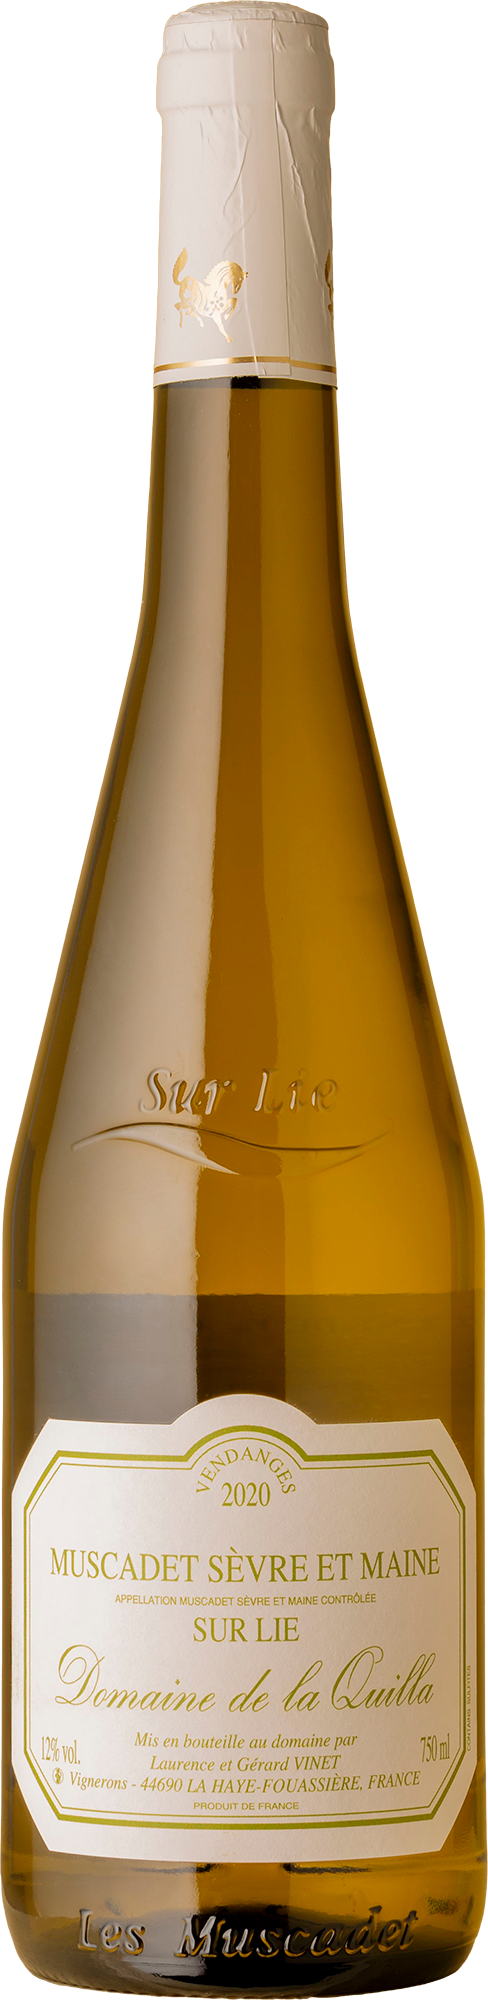 Domaine de la Quilla - Sèvre & Maine Muscadet 2020 White Wine